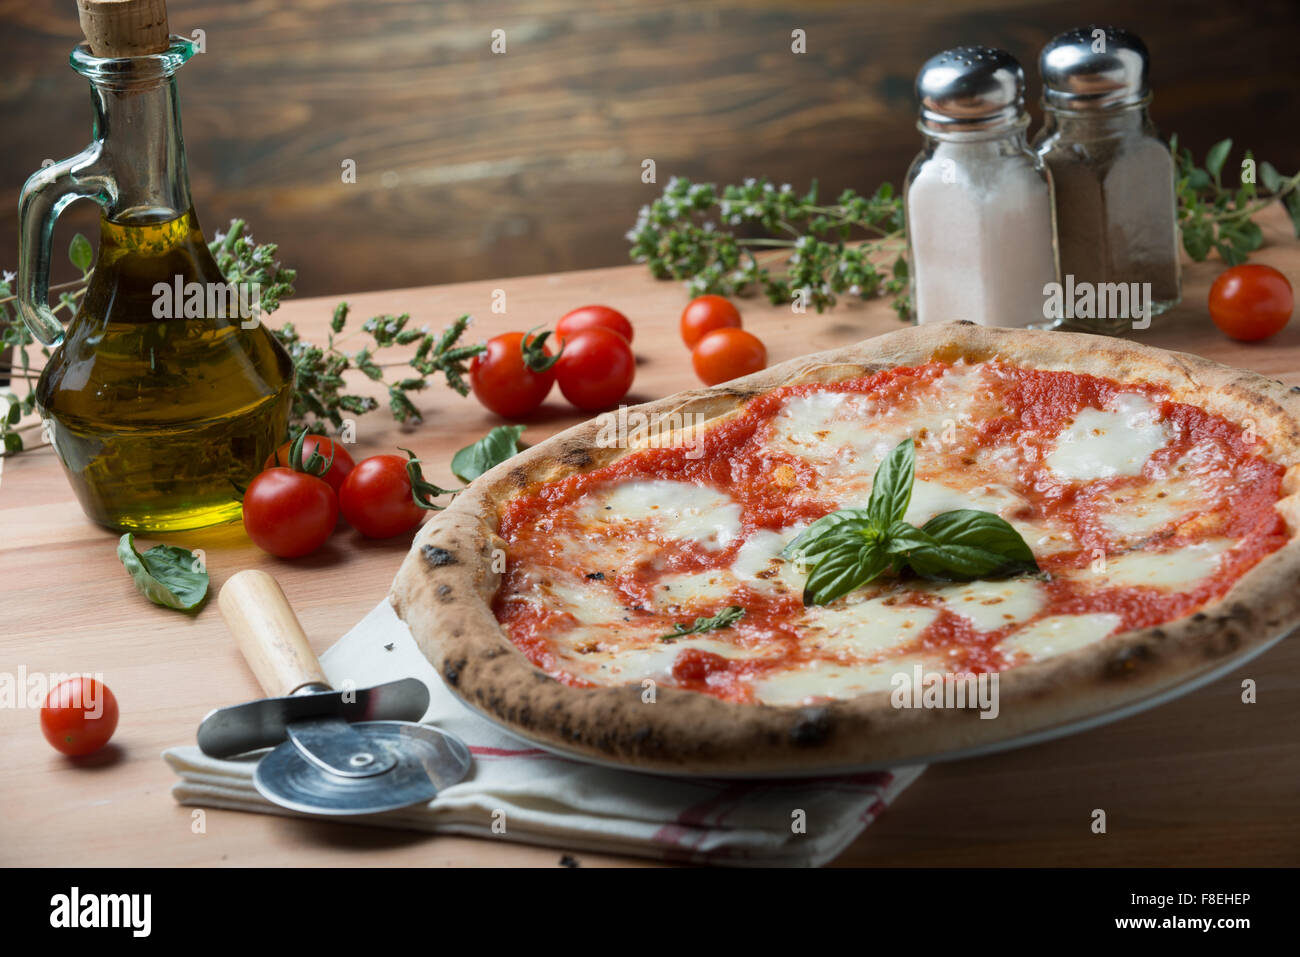 Pizza Margherita sur une vue supérieure de la composition Banque D'Images